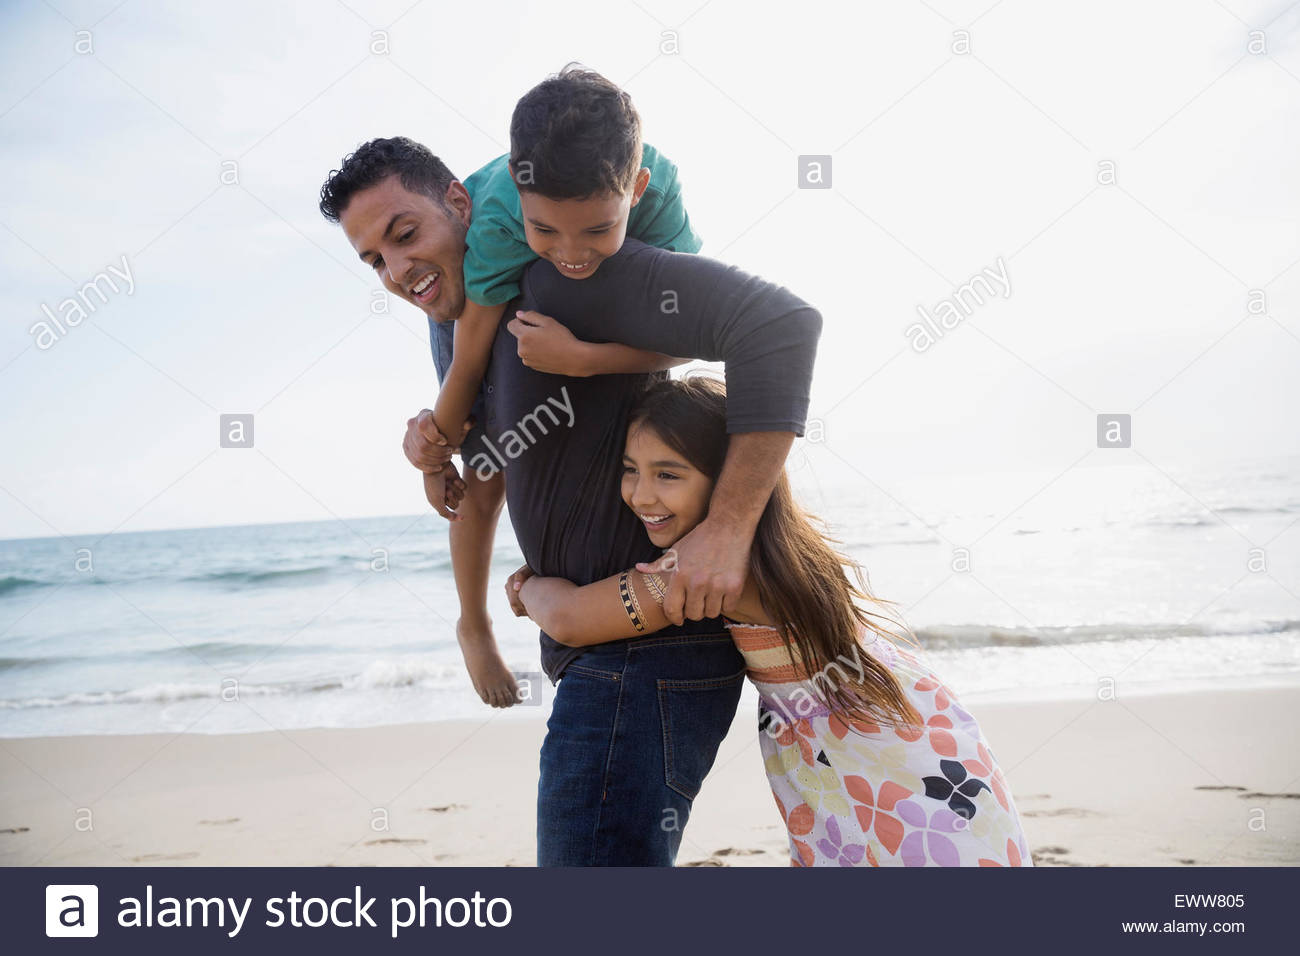 Playful family on sunny beach Stock Photo